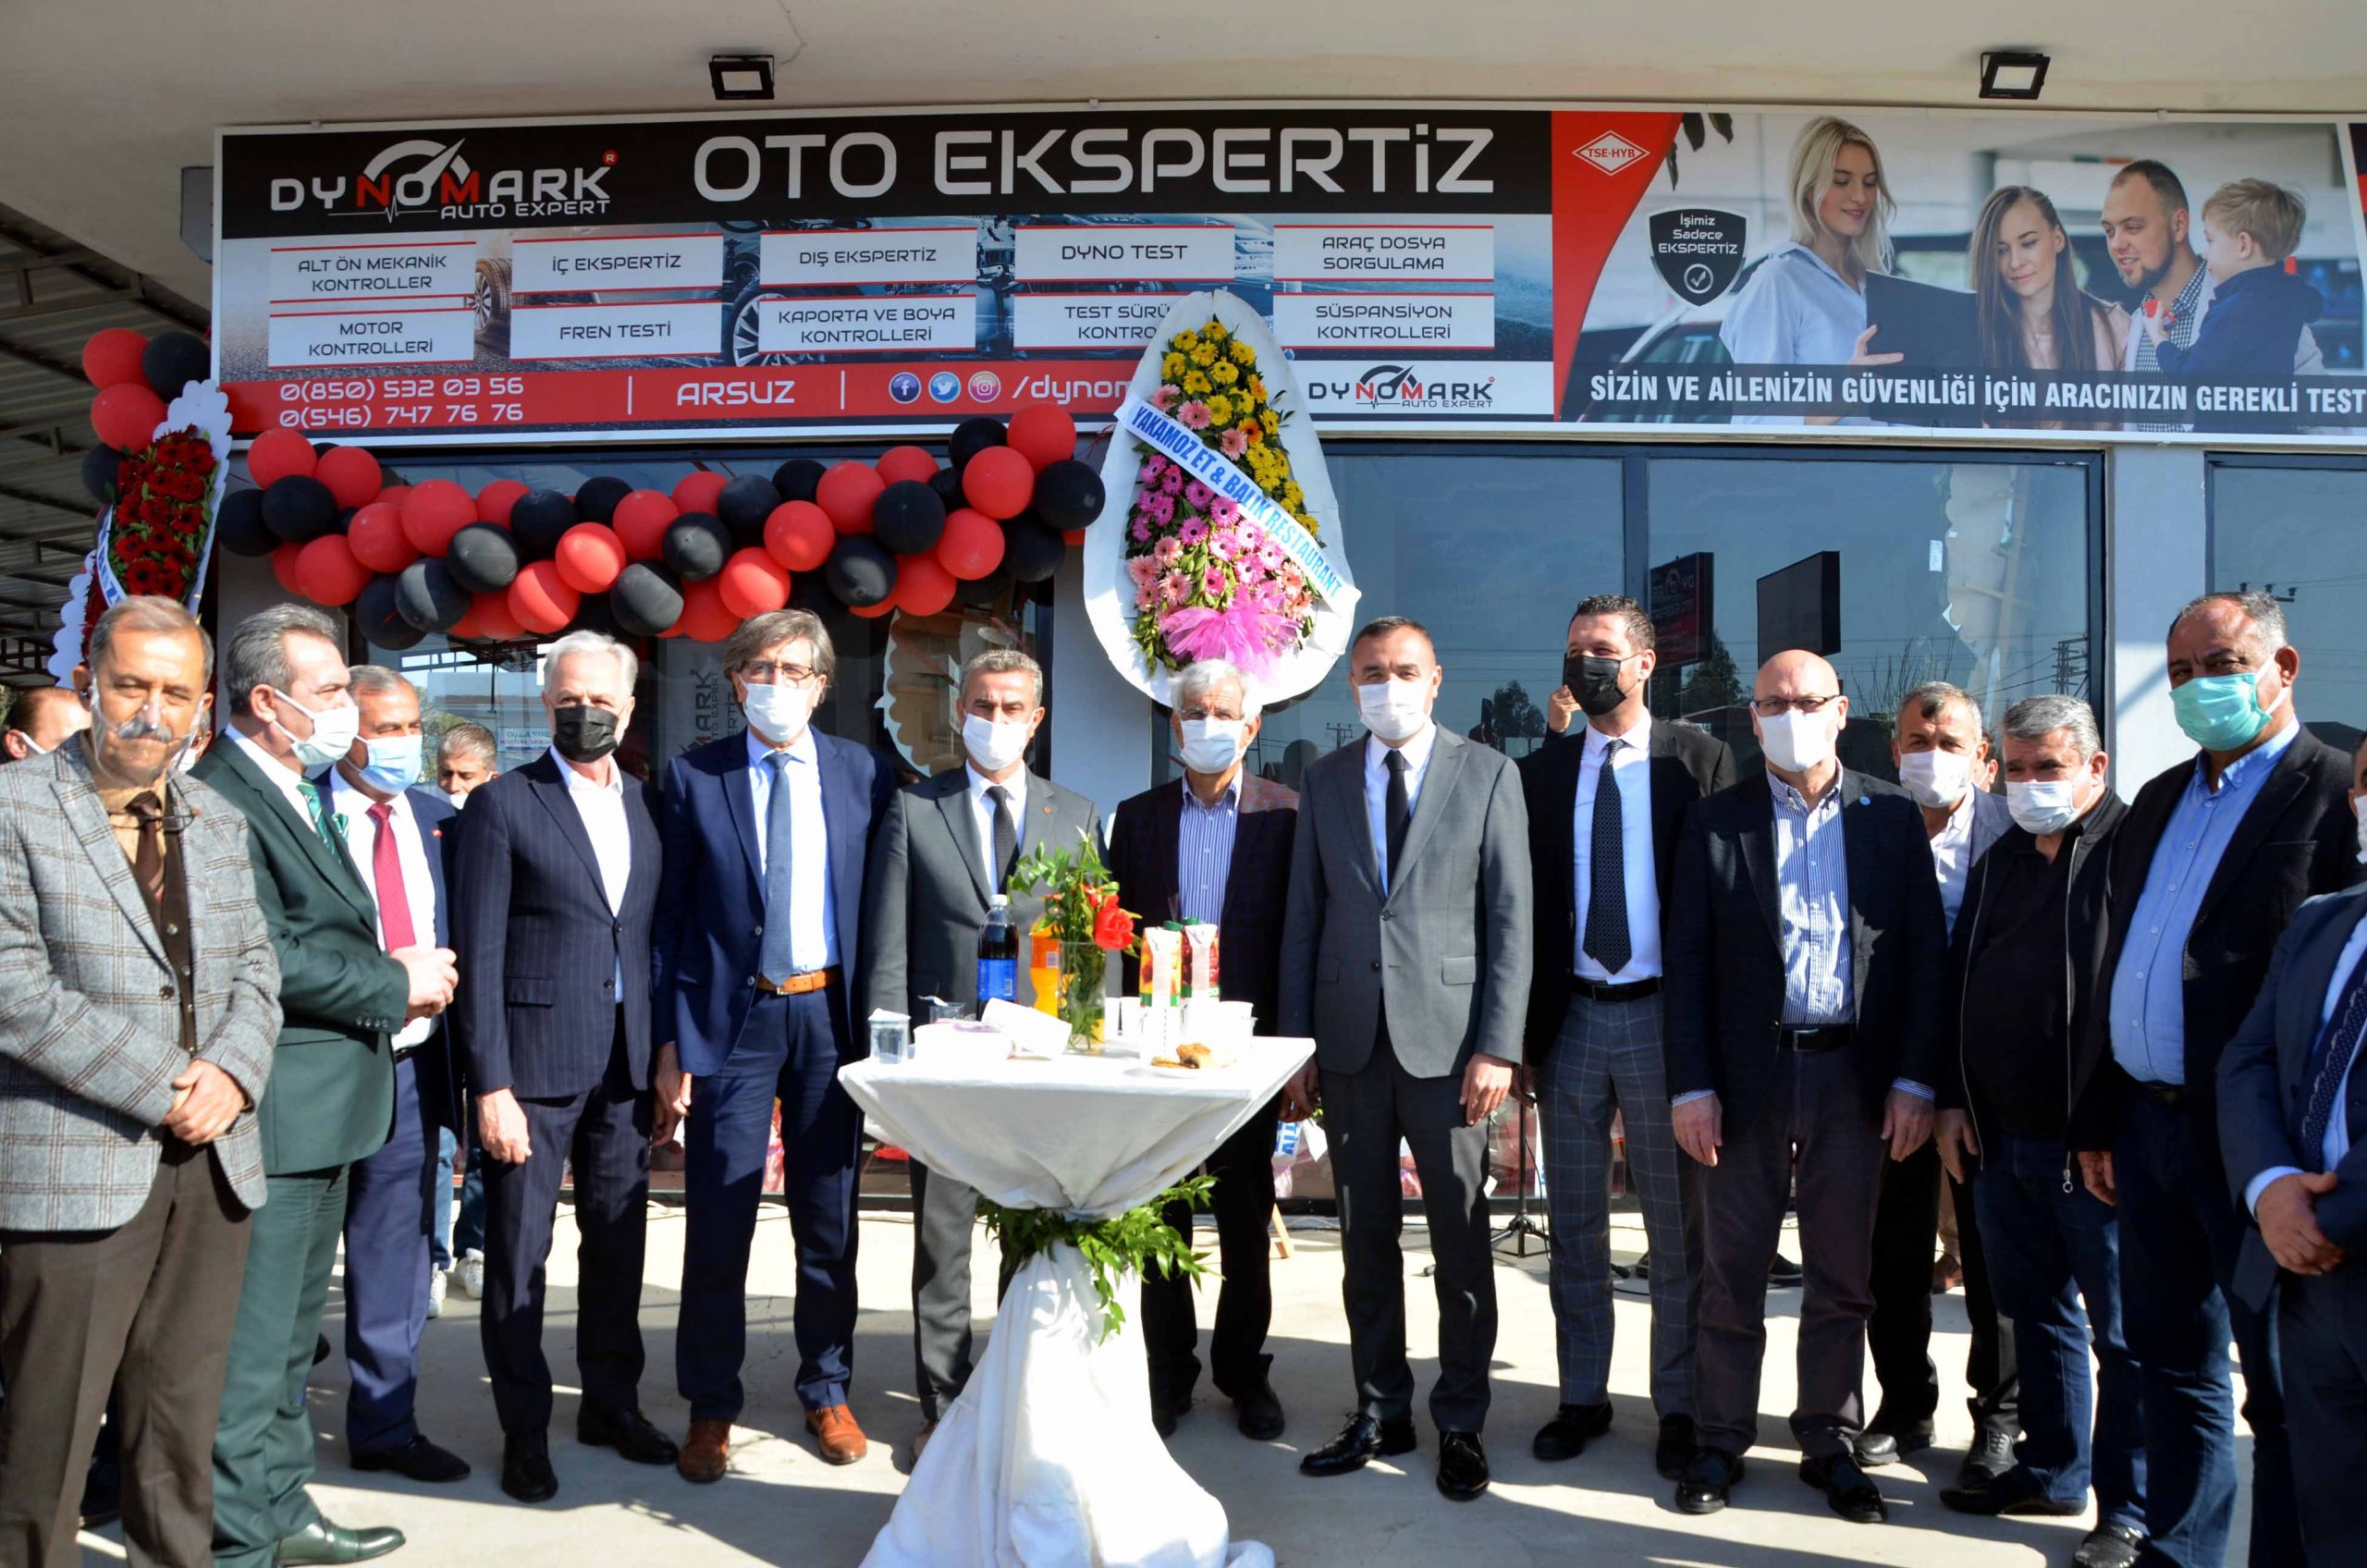 İTSO Yönetim Kurulu Üyeleri Dynomark Auto Ekspertiz’in Açılışına katıldı